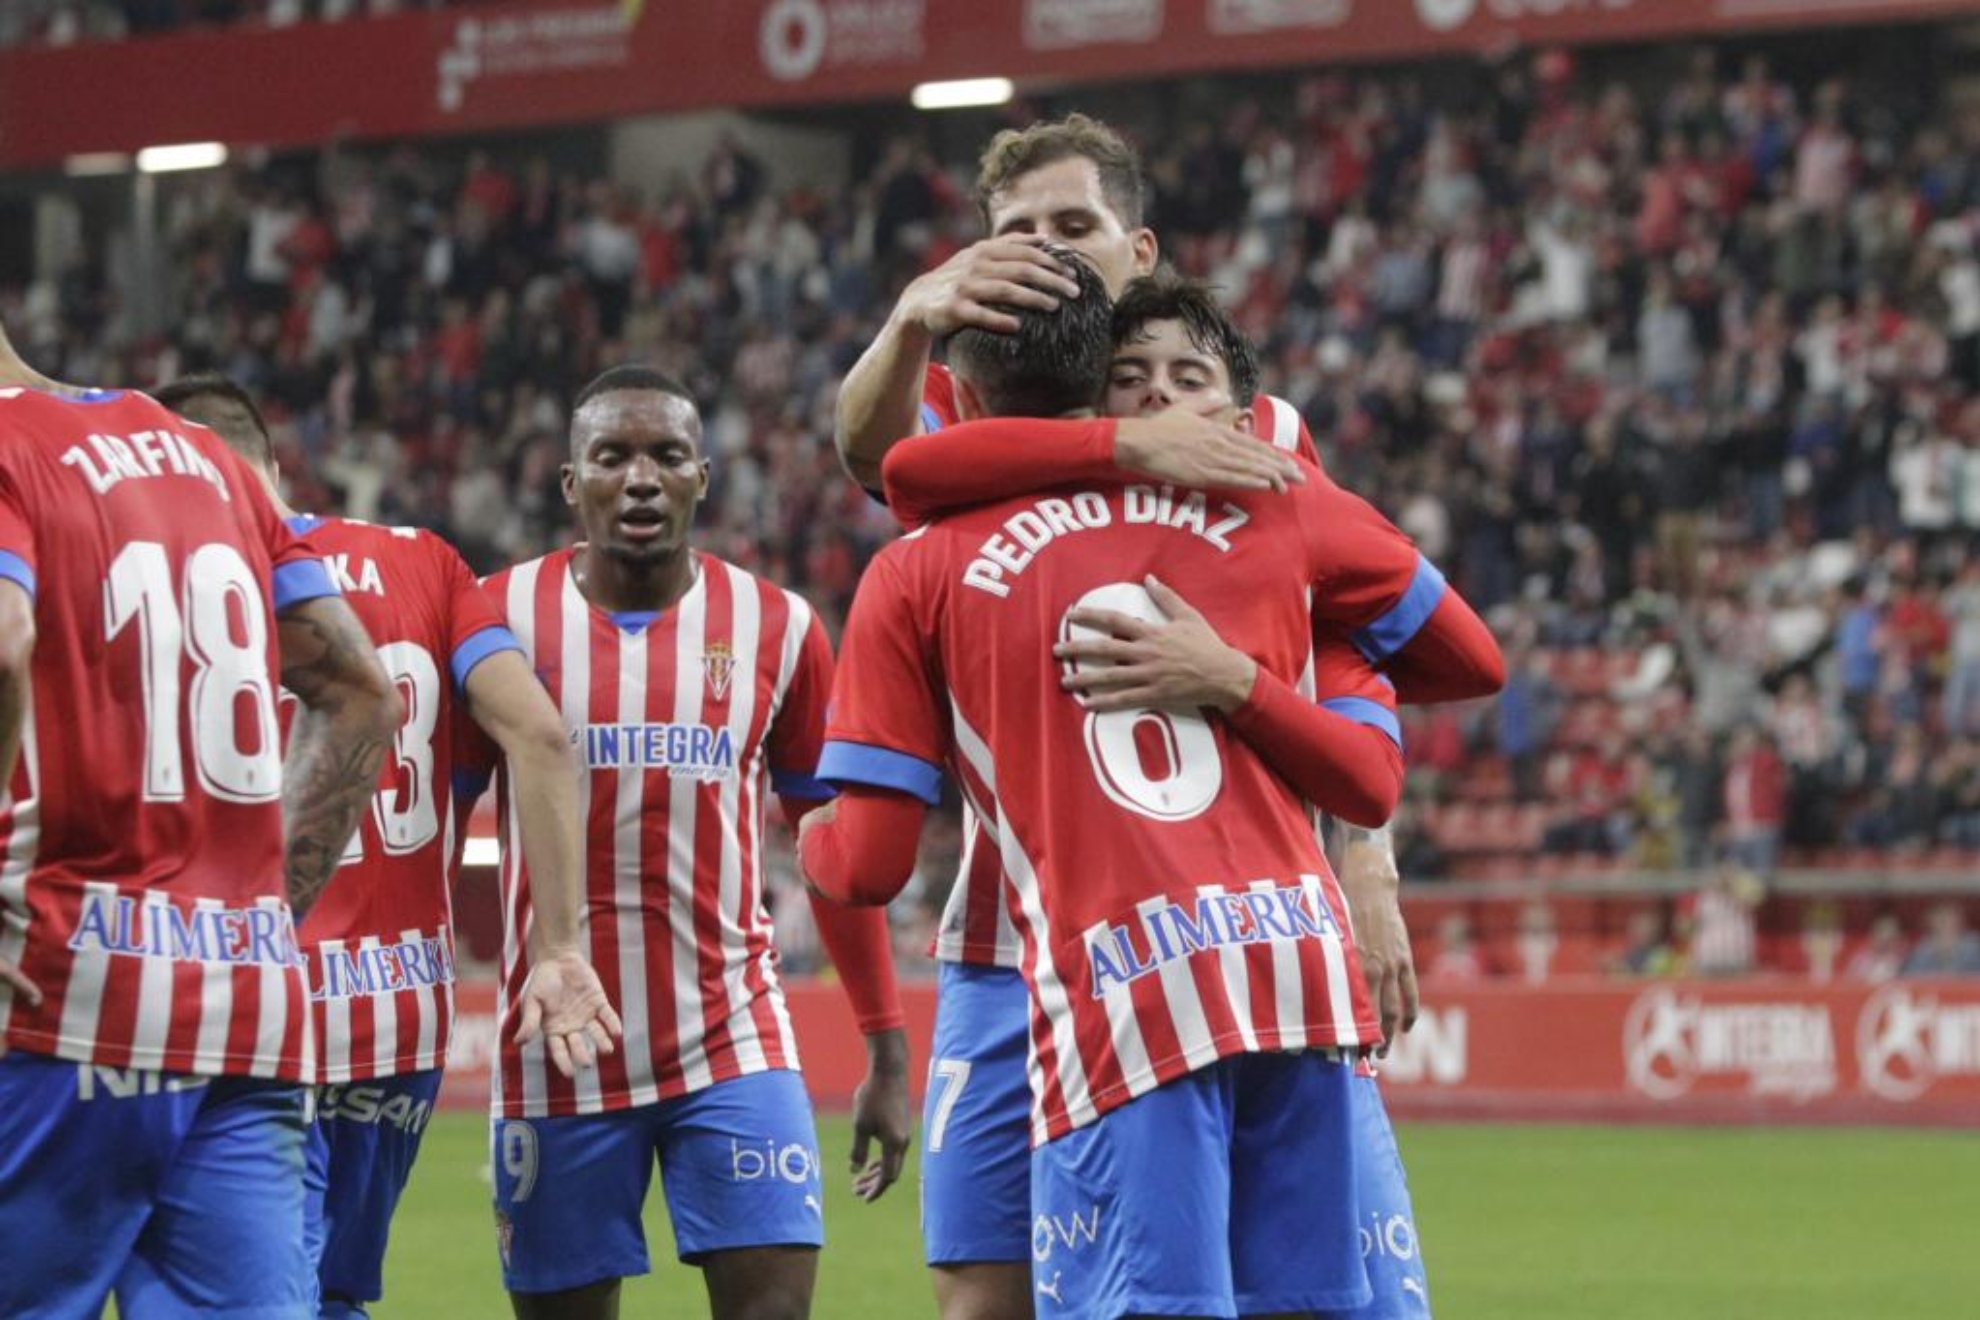 Los jugadores del Sporting celebran el gol marcado por Pedro Díaz al Eibar. /JUAN CARLOS TUERO